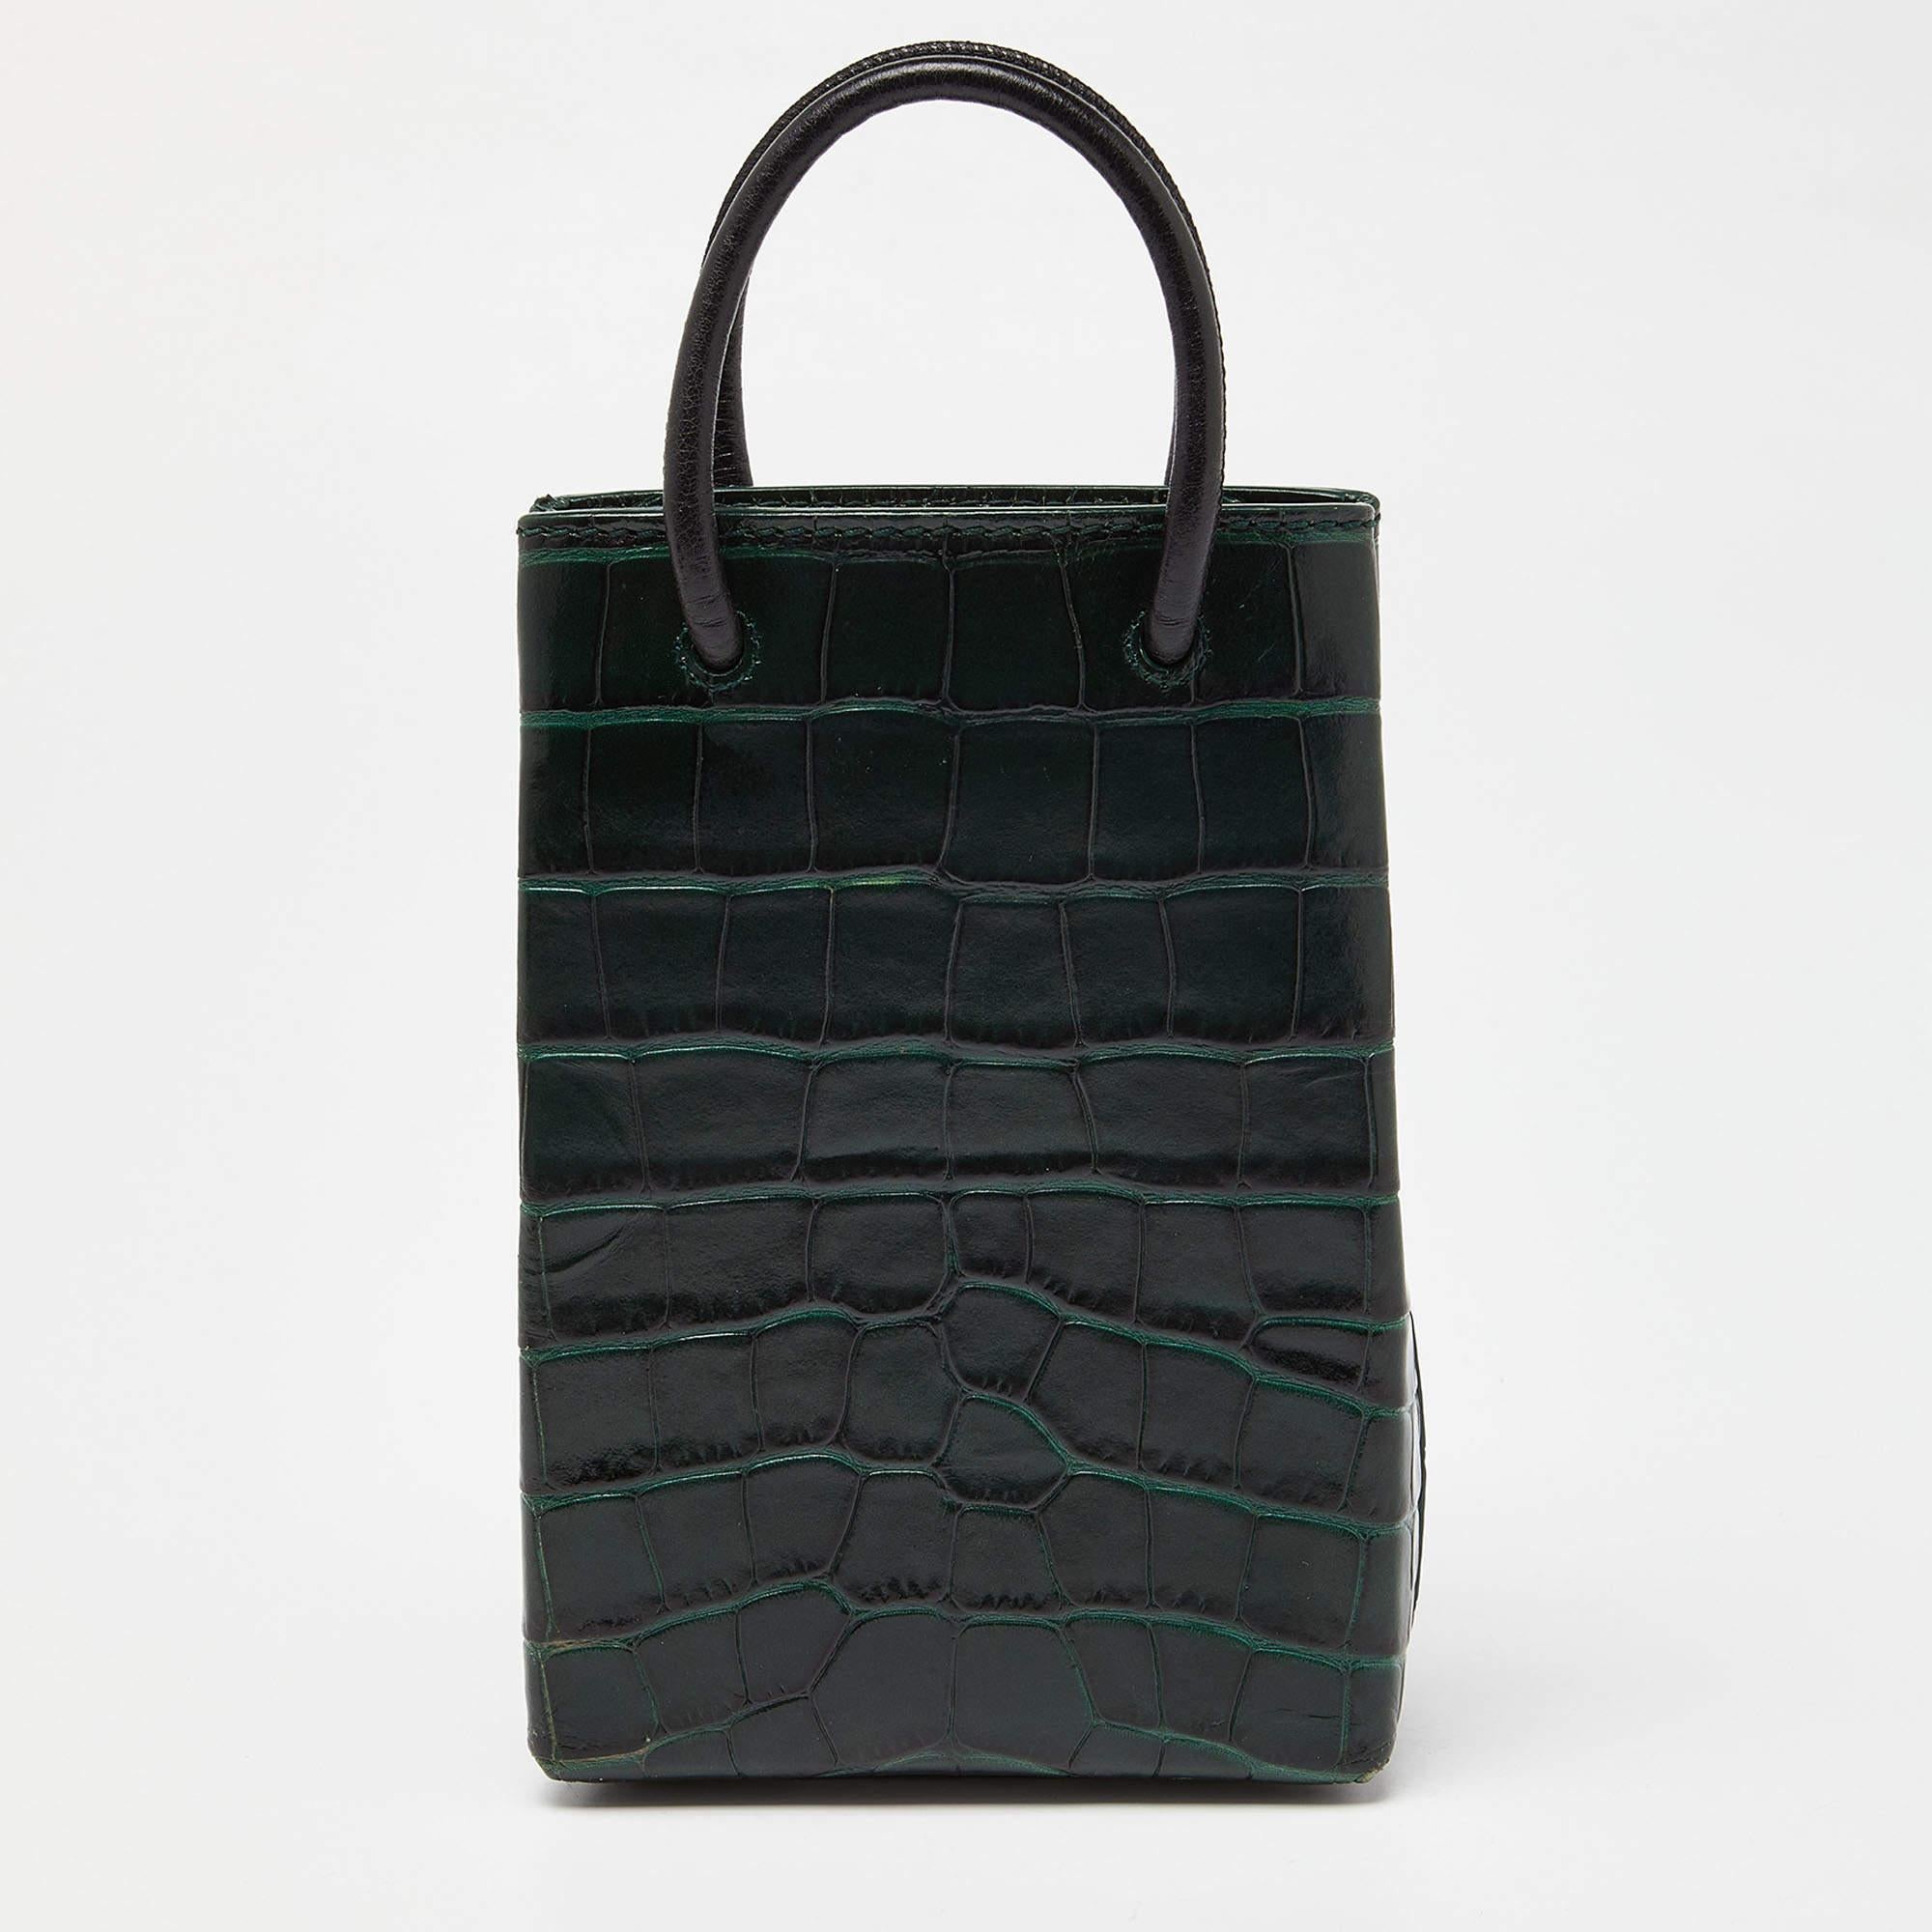 Ce sac Balenciaga est léger, résistant et agréable à porter. Il est magnifiquement fabriqué à l'aide des meilleurs matériaux pour être un allié de style durable.

